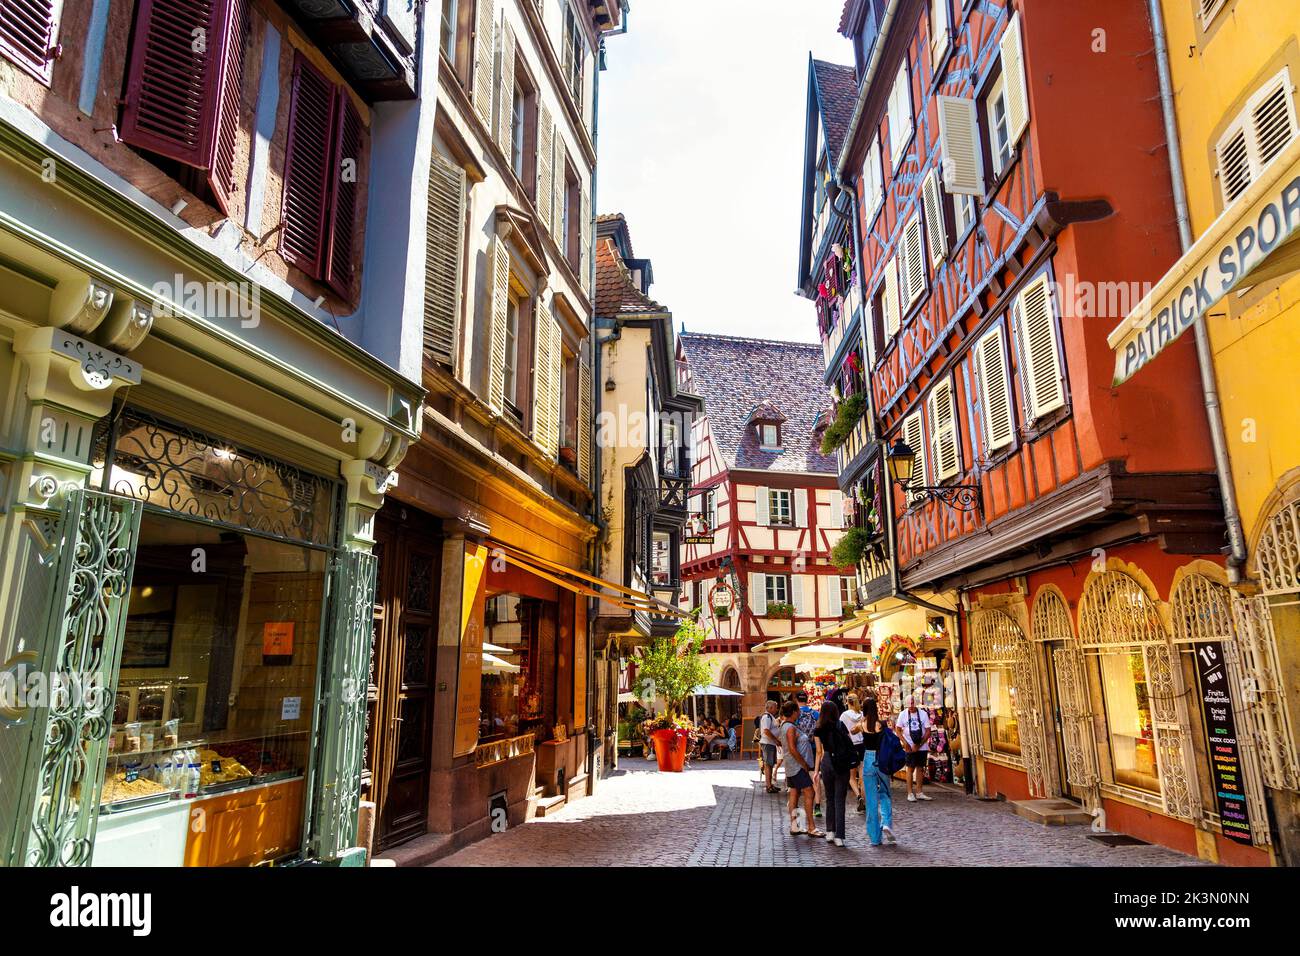 Tiendas y casas de madera medieval en Rue des Marchands, Colmar, Alsacia, Francia Foto de stock